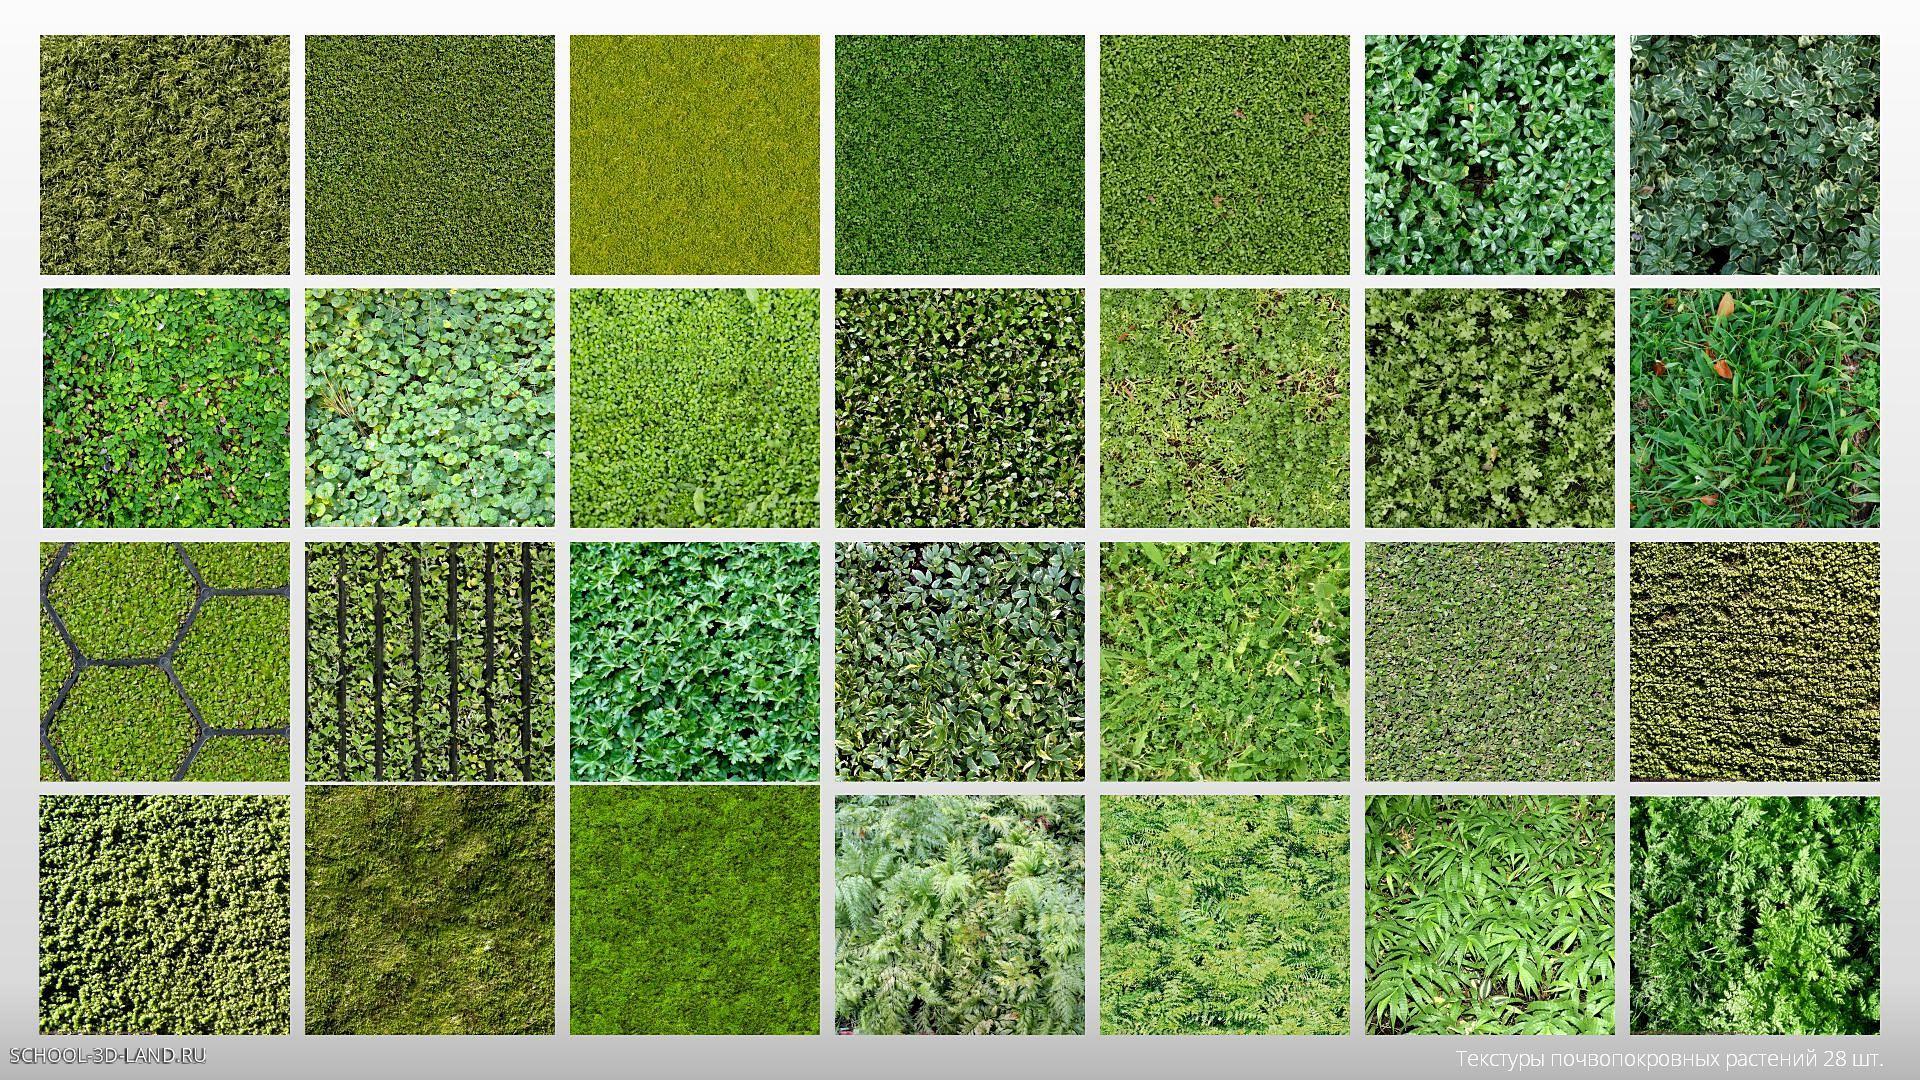 Текстуры почвопокровных растений (28шт)